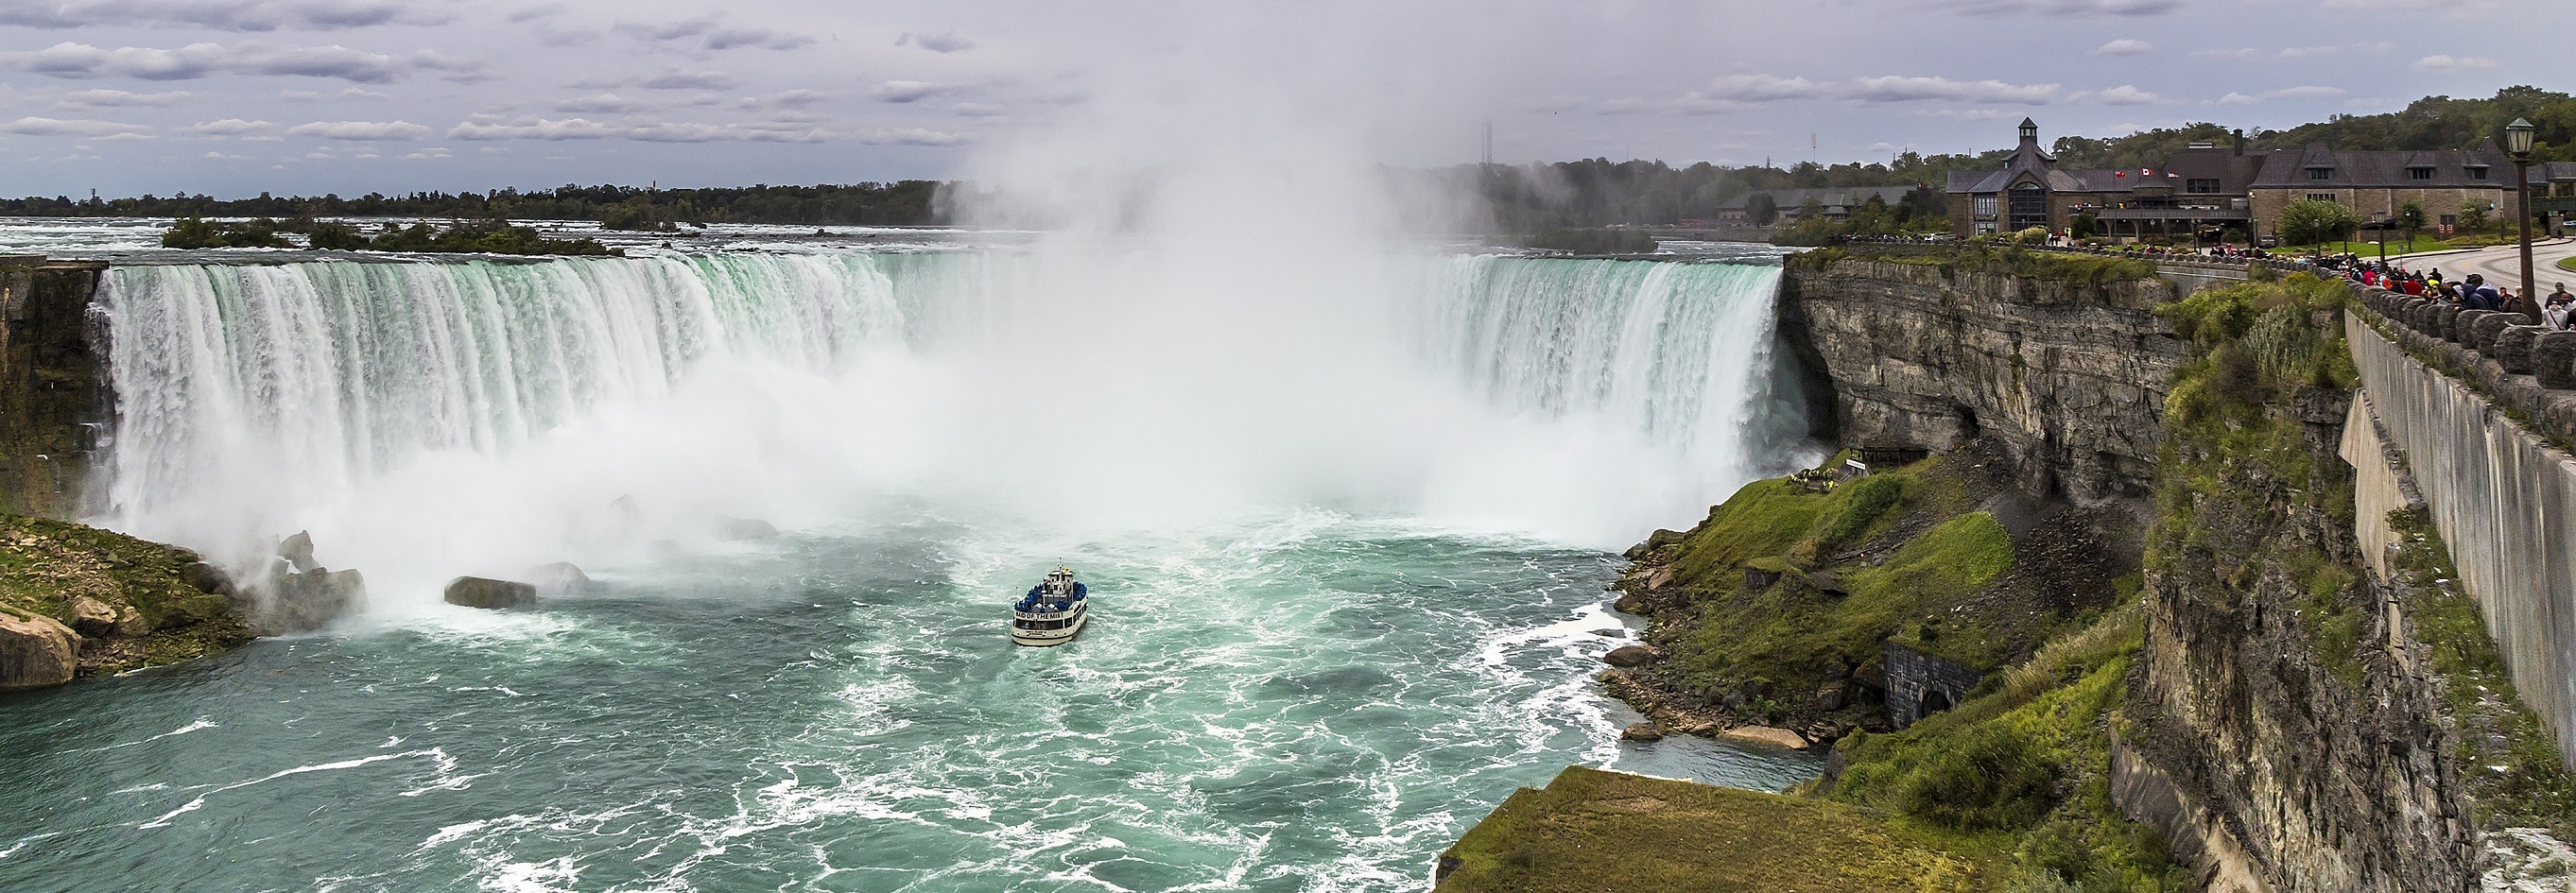 Niagara Falls EDUCATIONAL TRIP CANADA